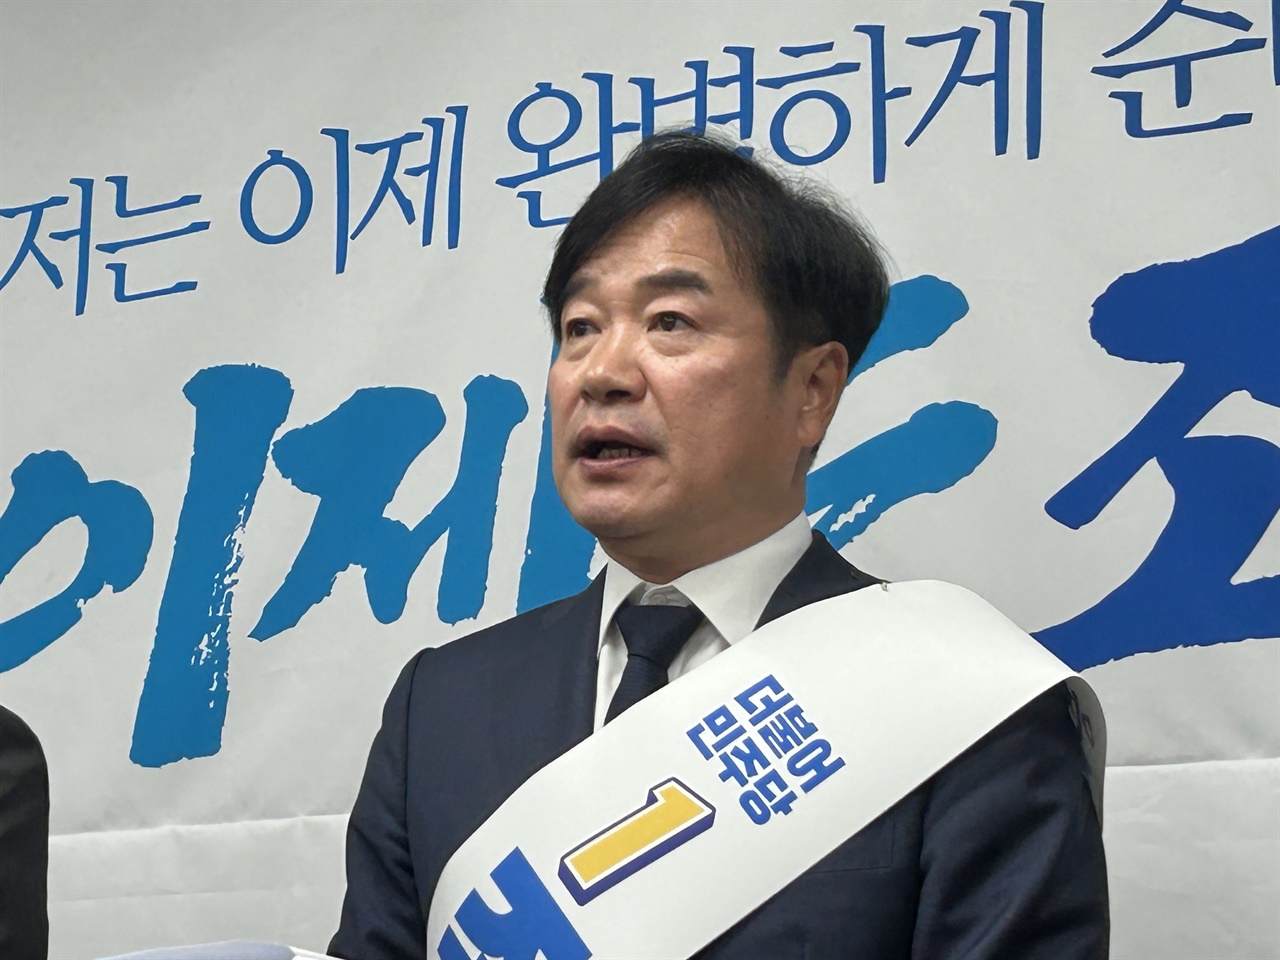 조한기 민주당 서산태안지역위원장은 예비후보 등록일인 12일 서산시청에서 22대 총선 서산·태안 선거구 출마를 공식 선언했다.